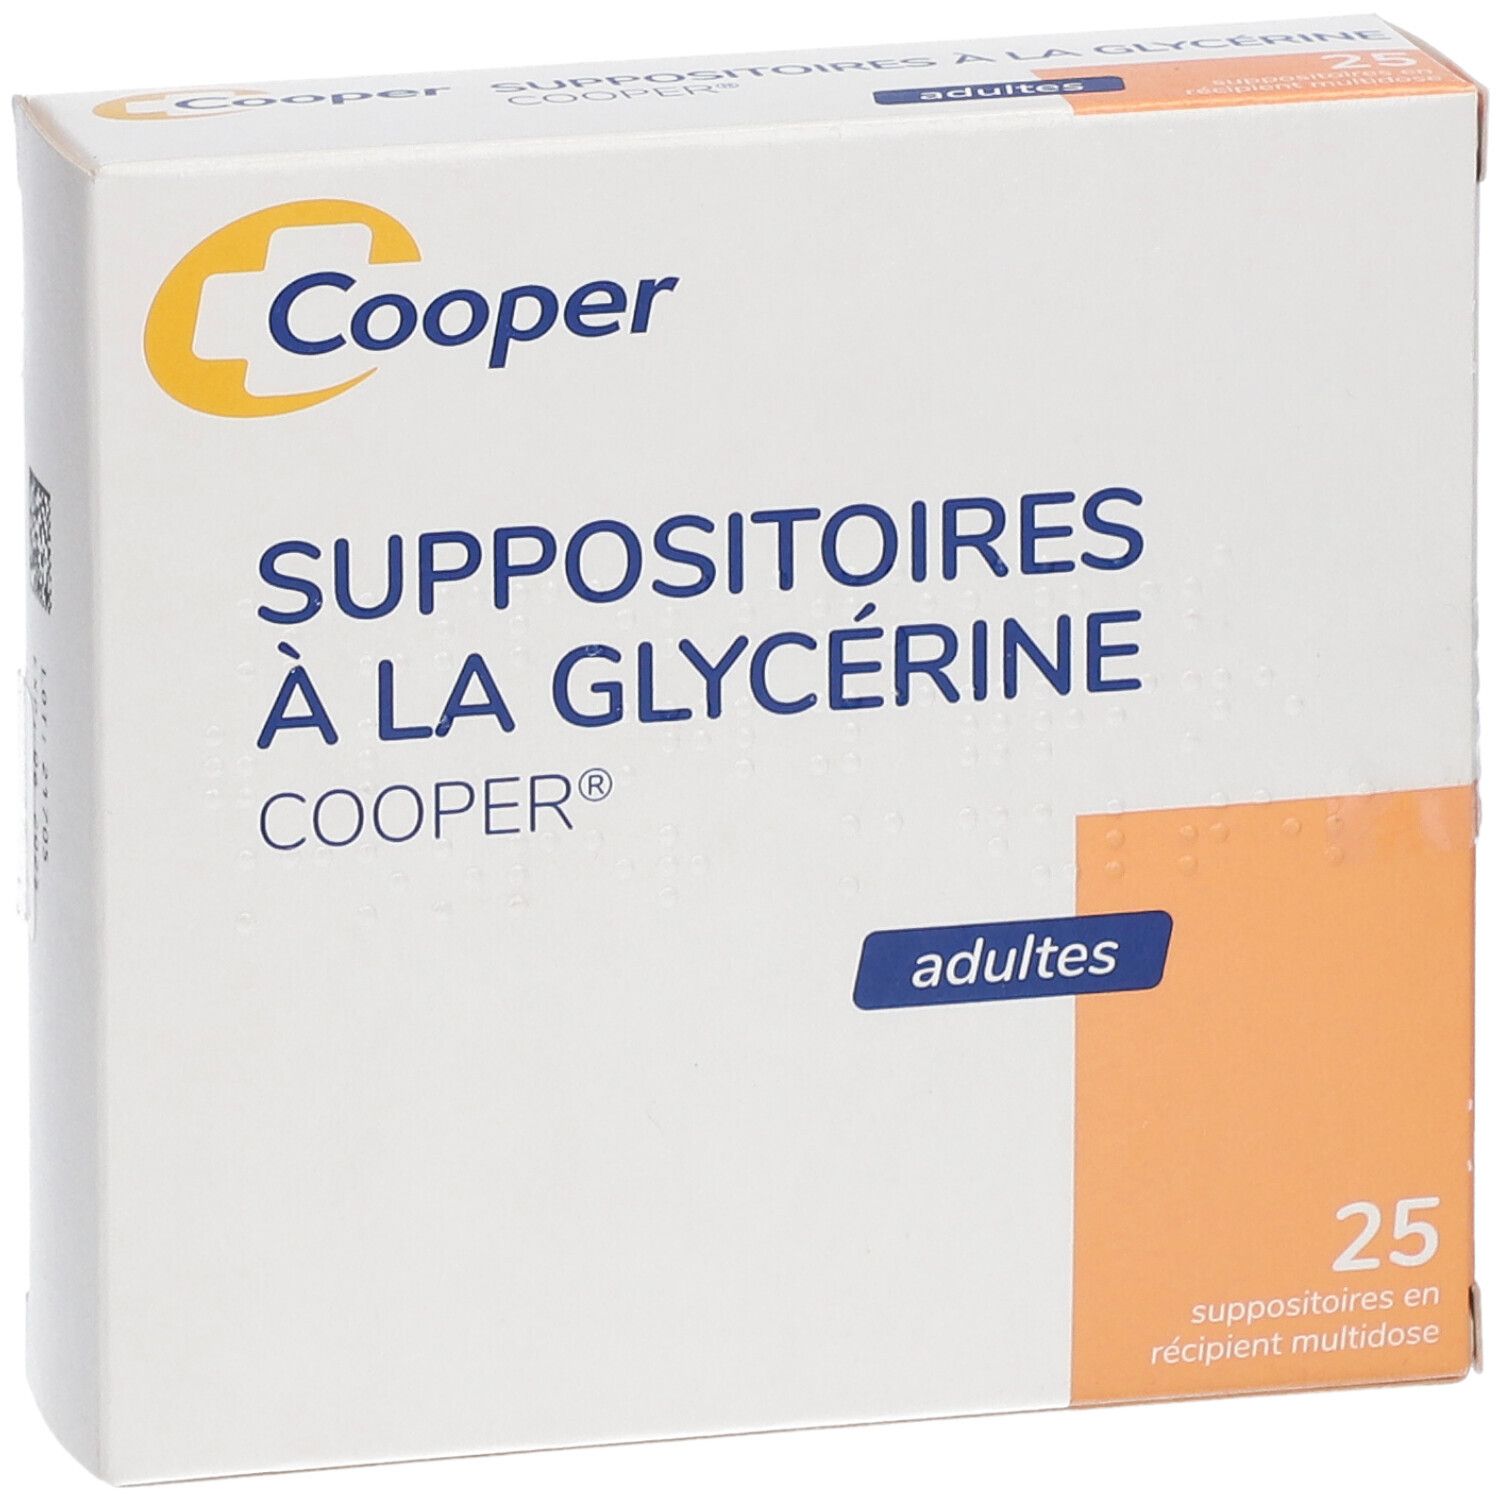 Option+ suppositoires à la glycérine pour adultes 24 unités